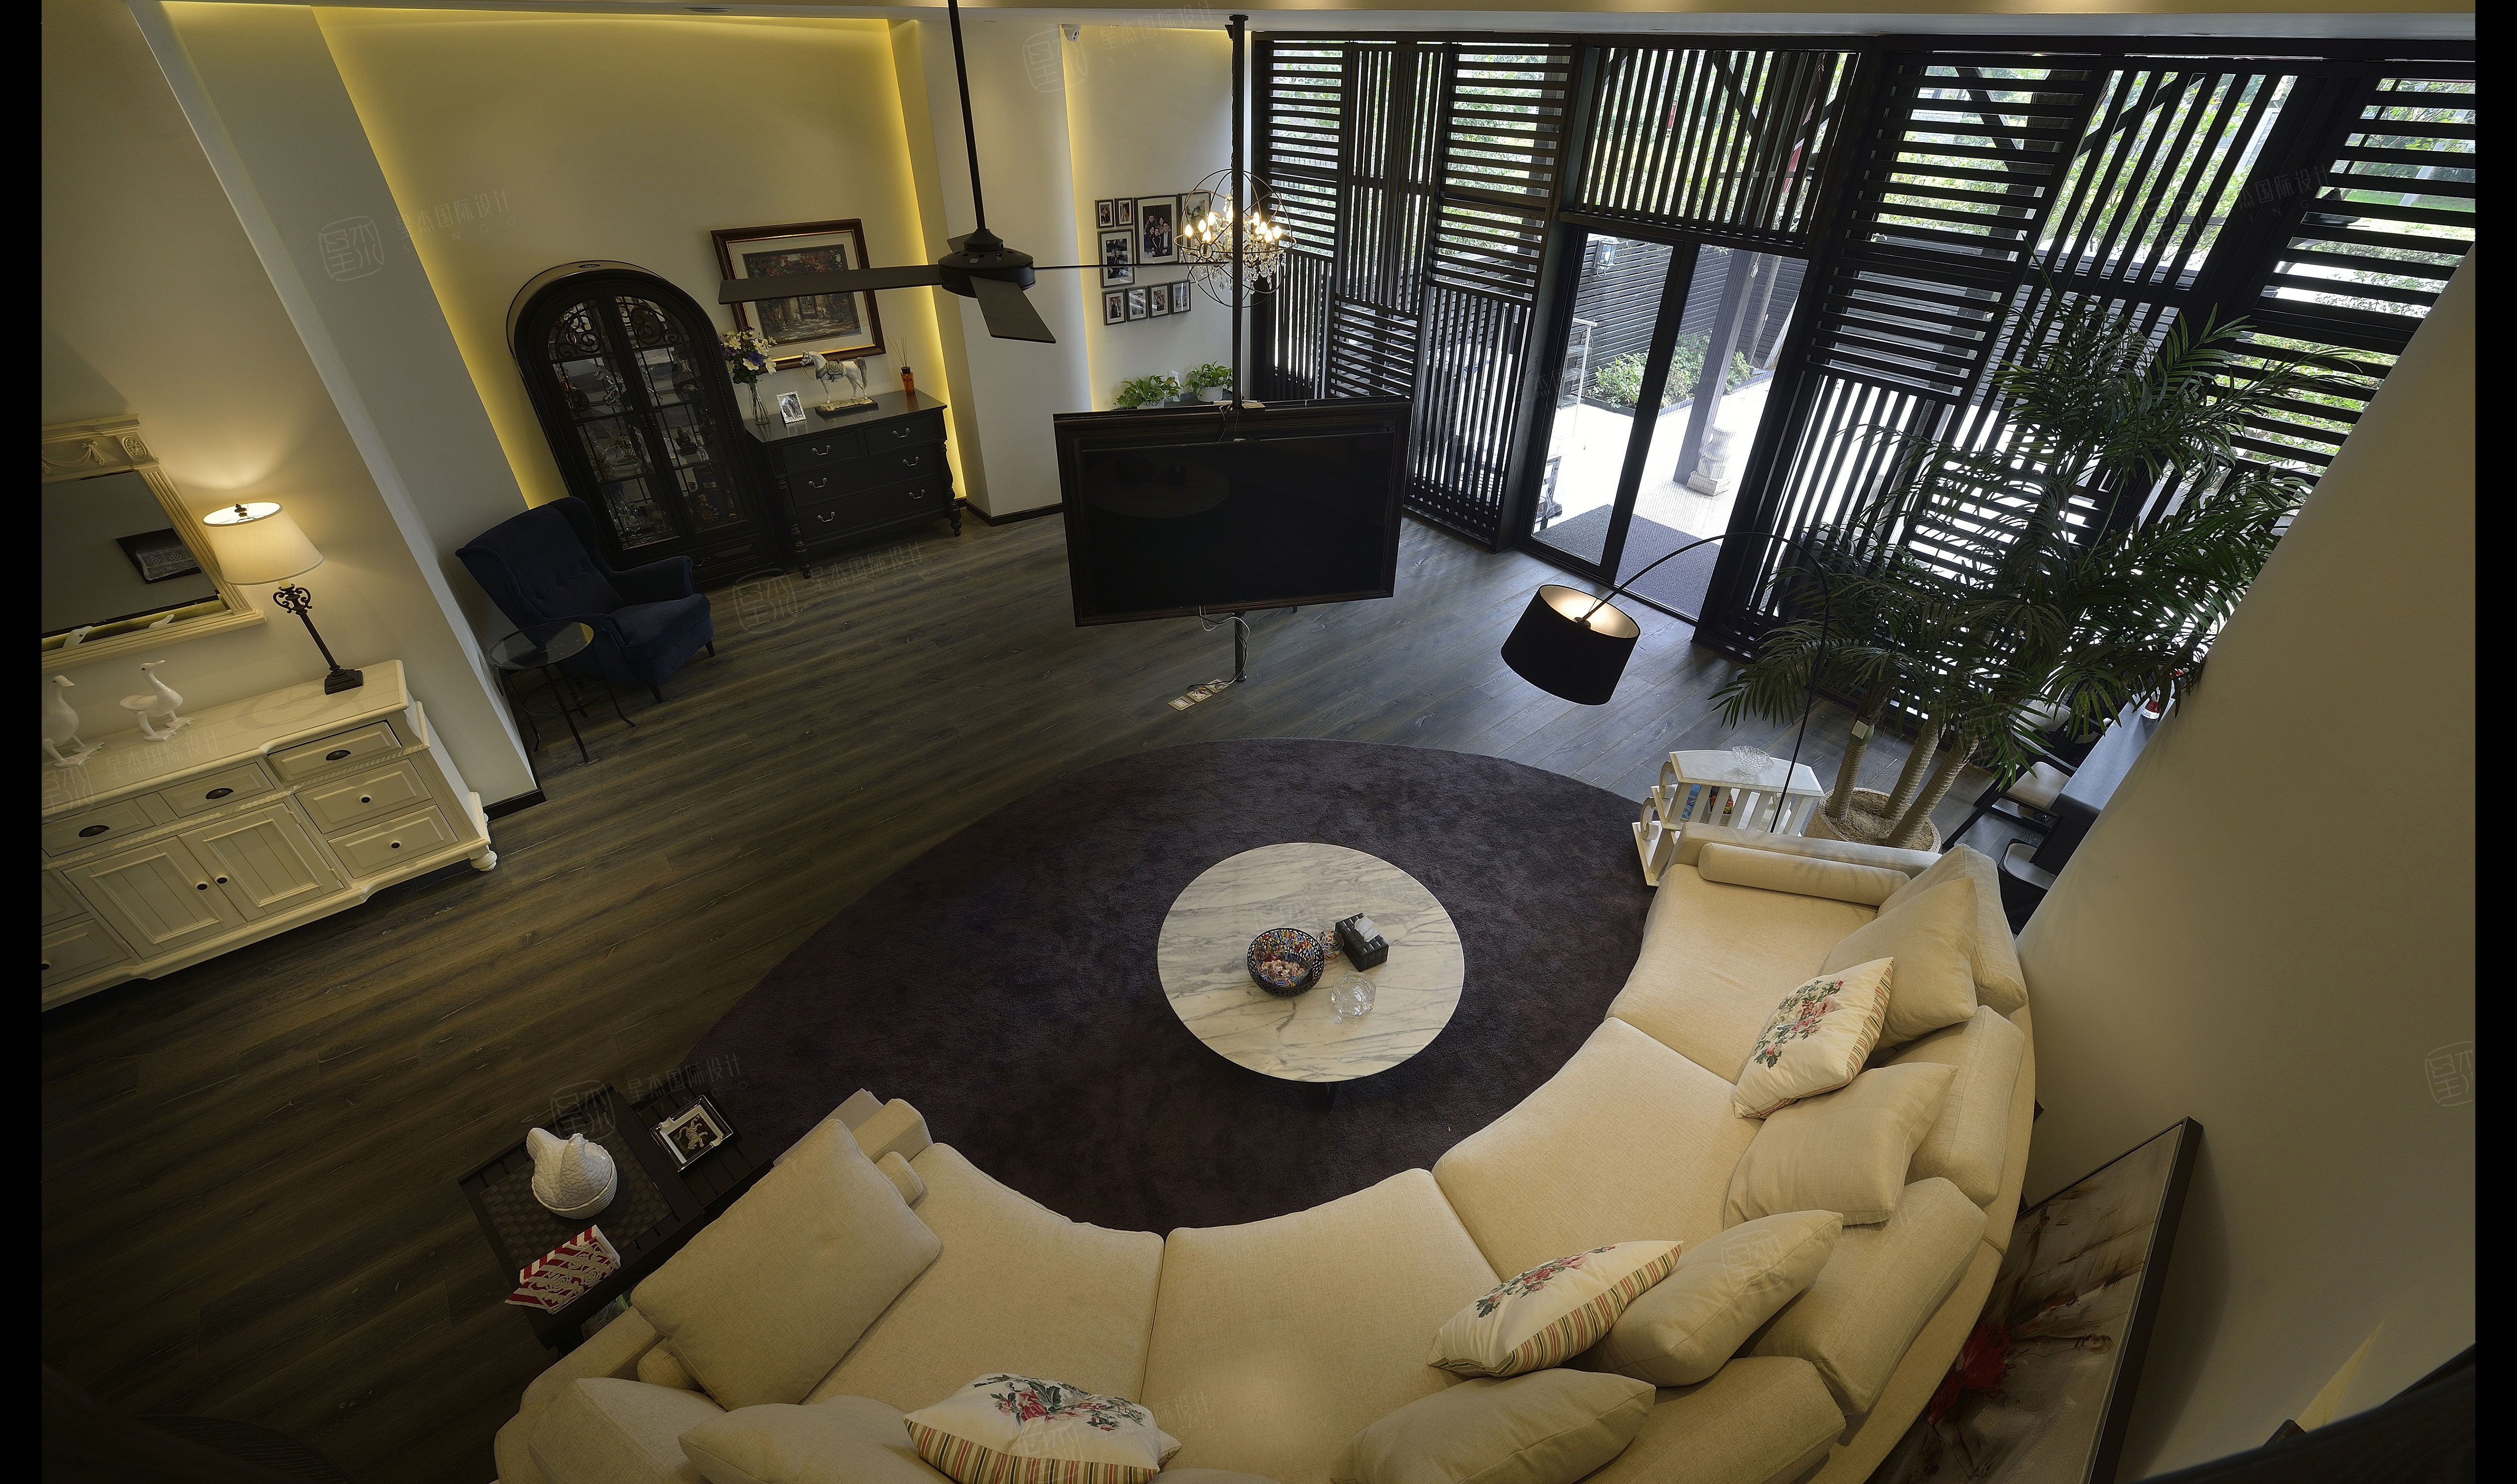 逸翠园-140平米公寓现代风格-谷居家居装修设计效果图